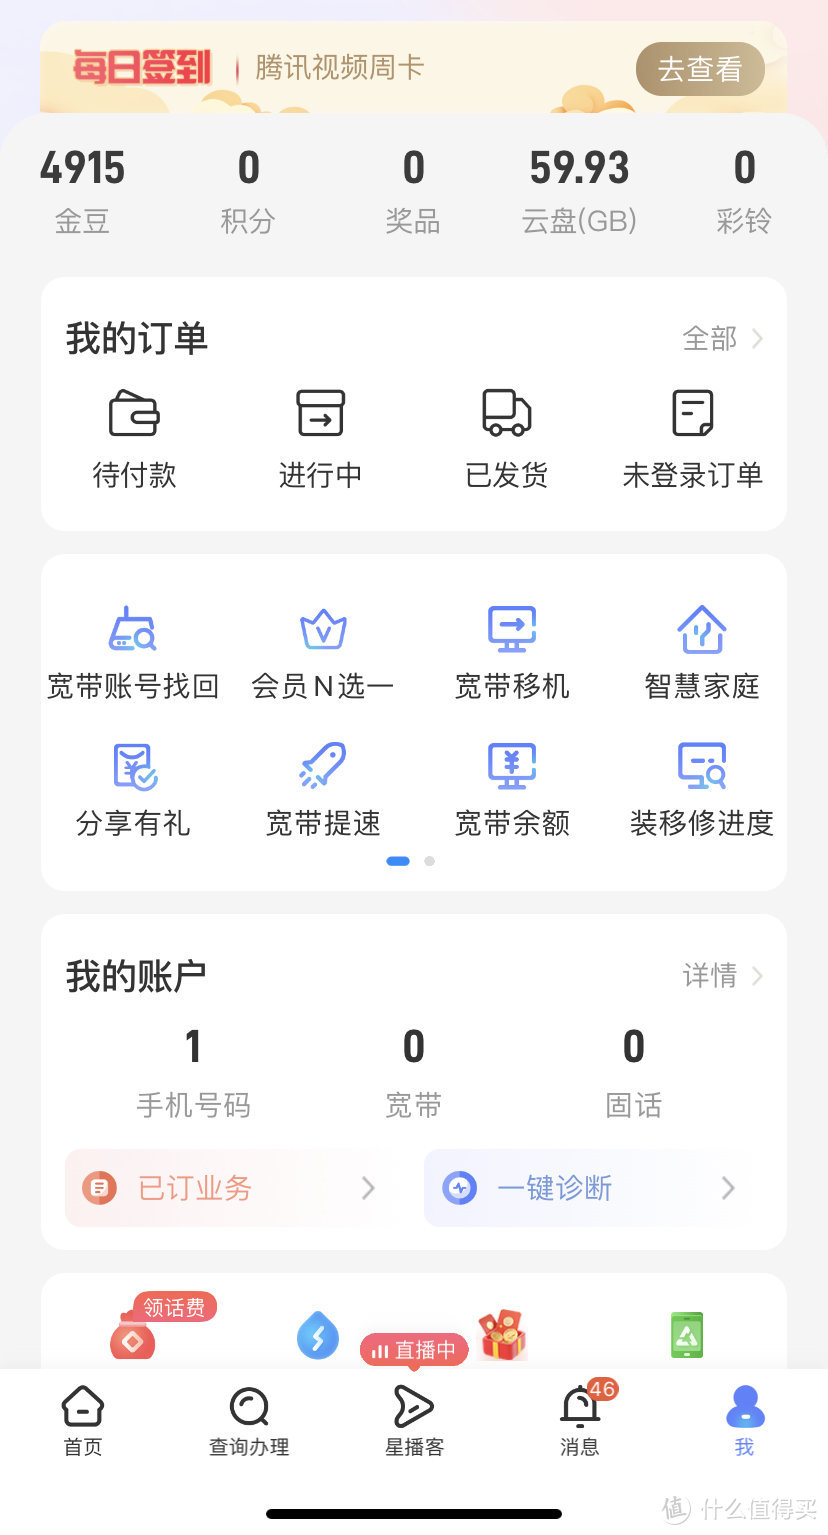 中国电信App签到有好礼